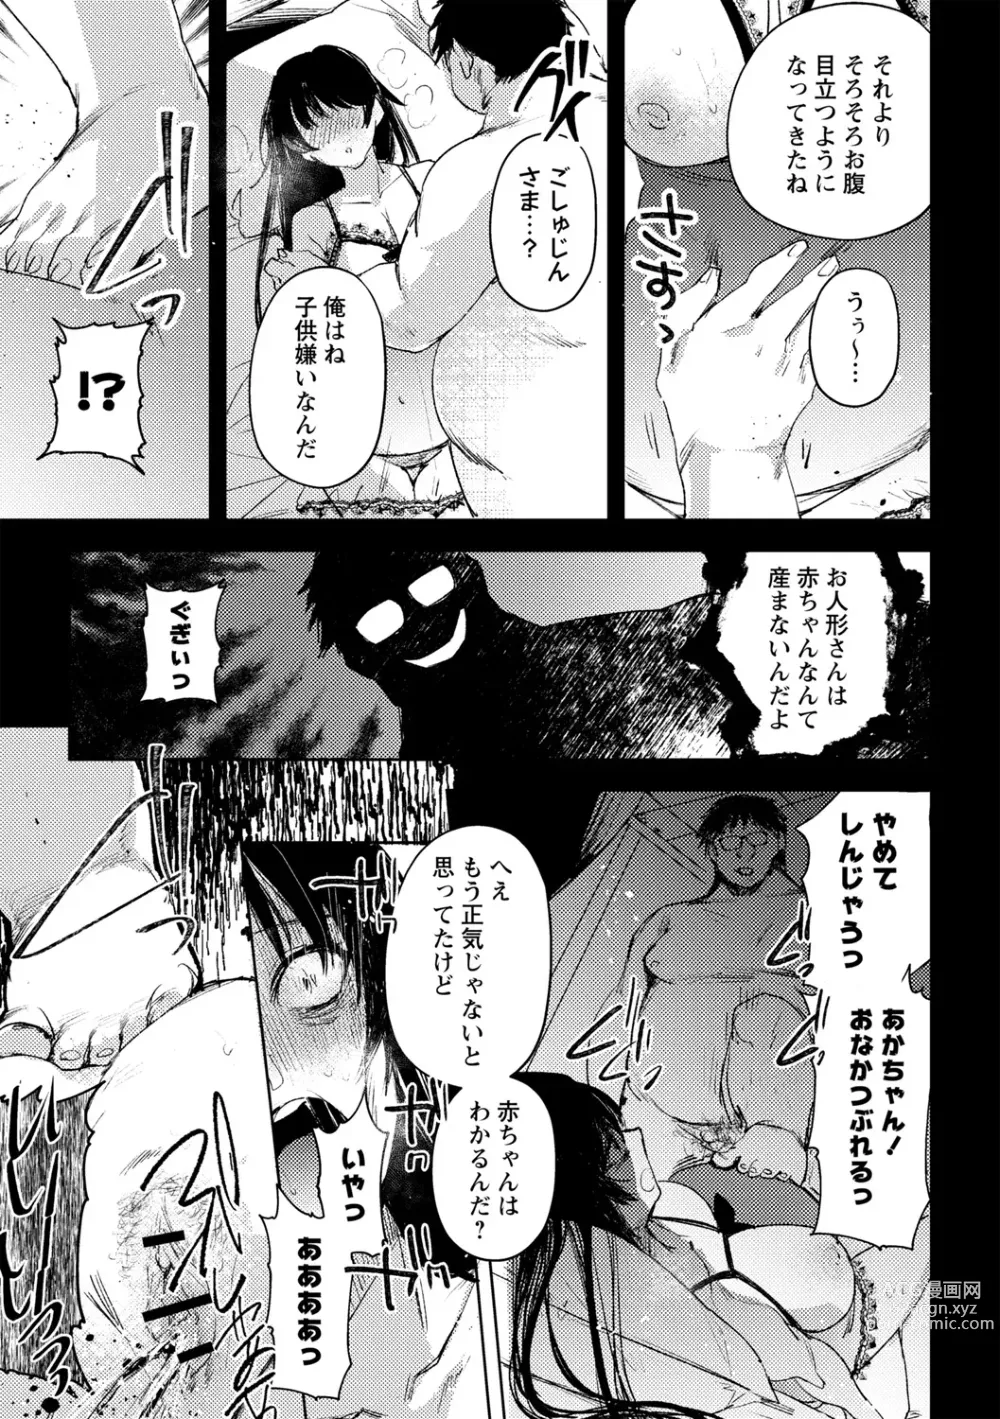 Page 27 of manga Yuuhei  KodoOji no Tou